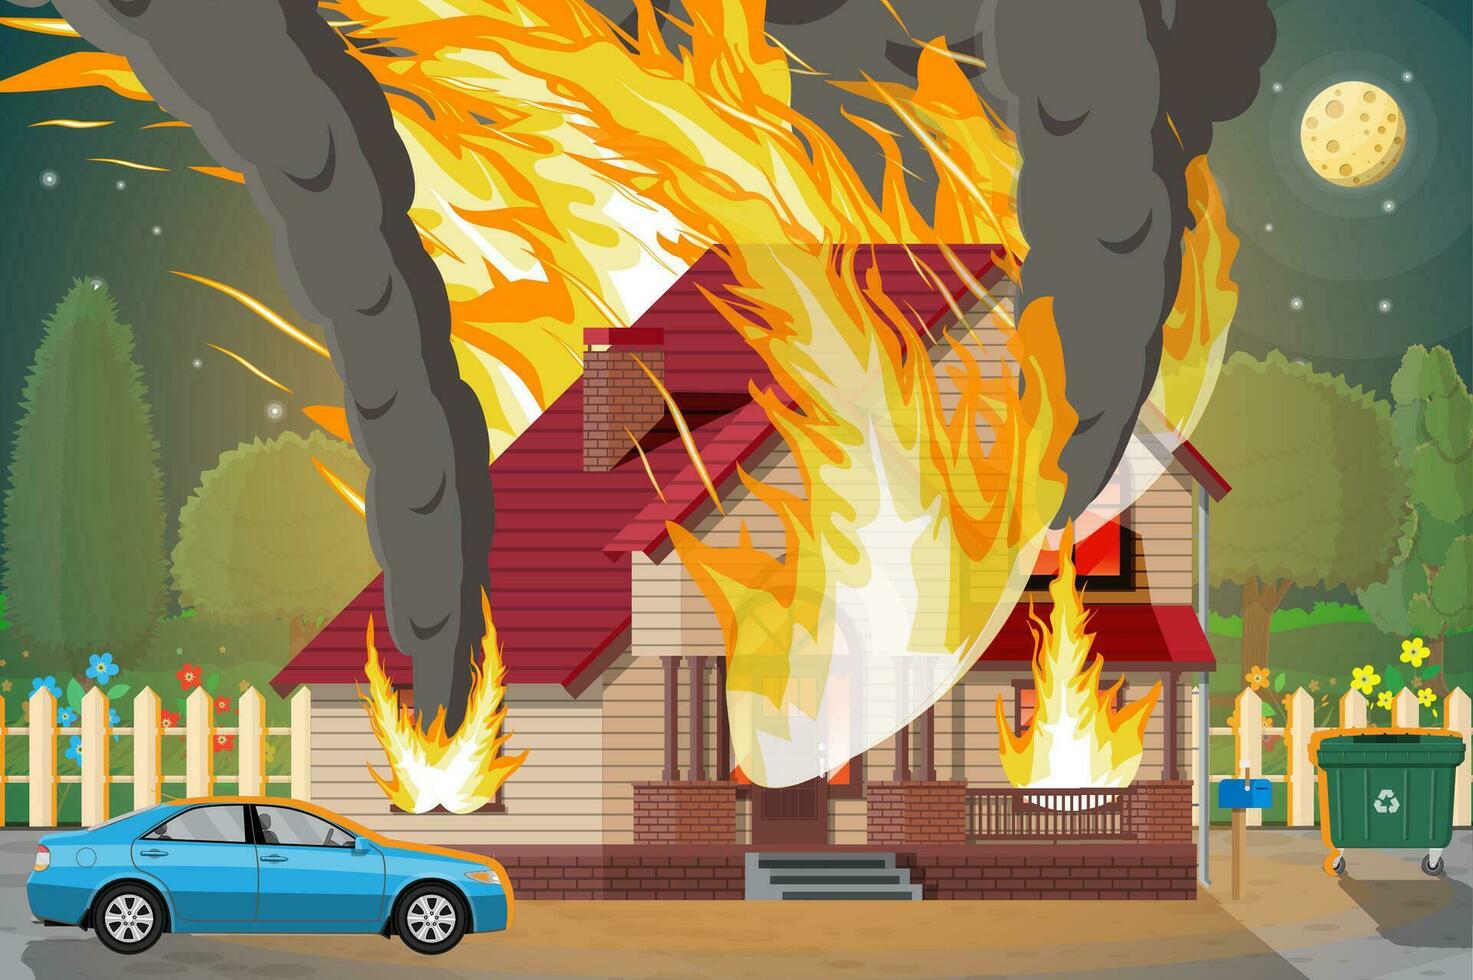 houten huis brandwonden. brand in huisje. oranje vlammen in ramen, zwart rook met vonken. eigendom verzekering. natuur landschap. natuurlijk ramp concept. vector illustratie in vlak stijl